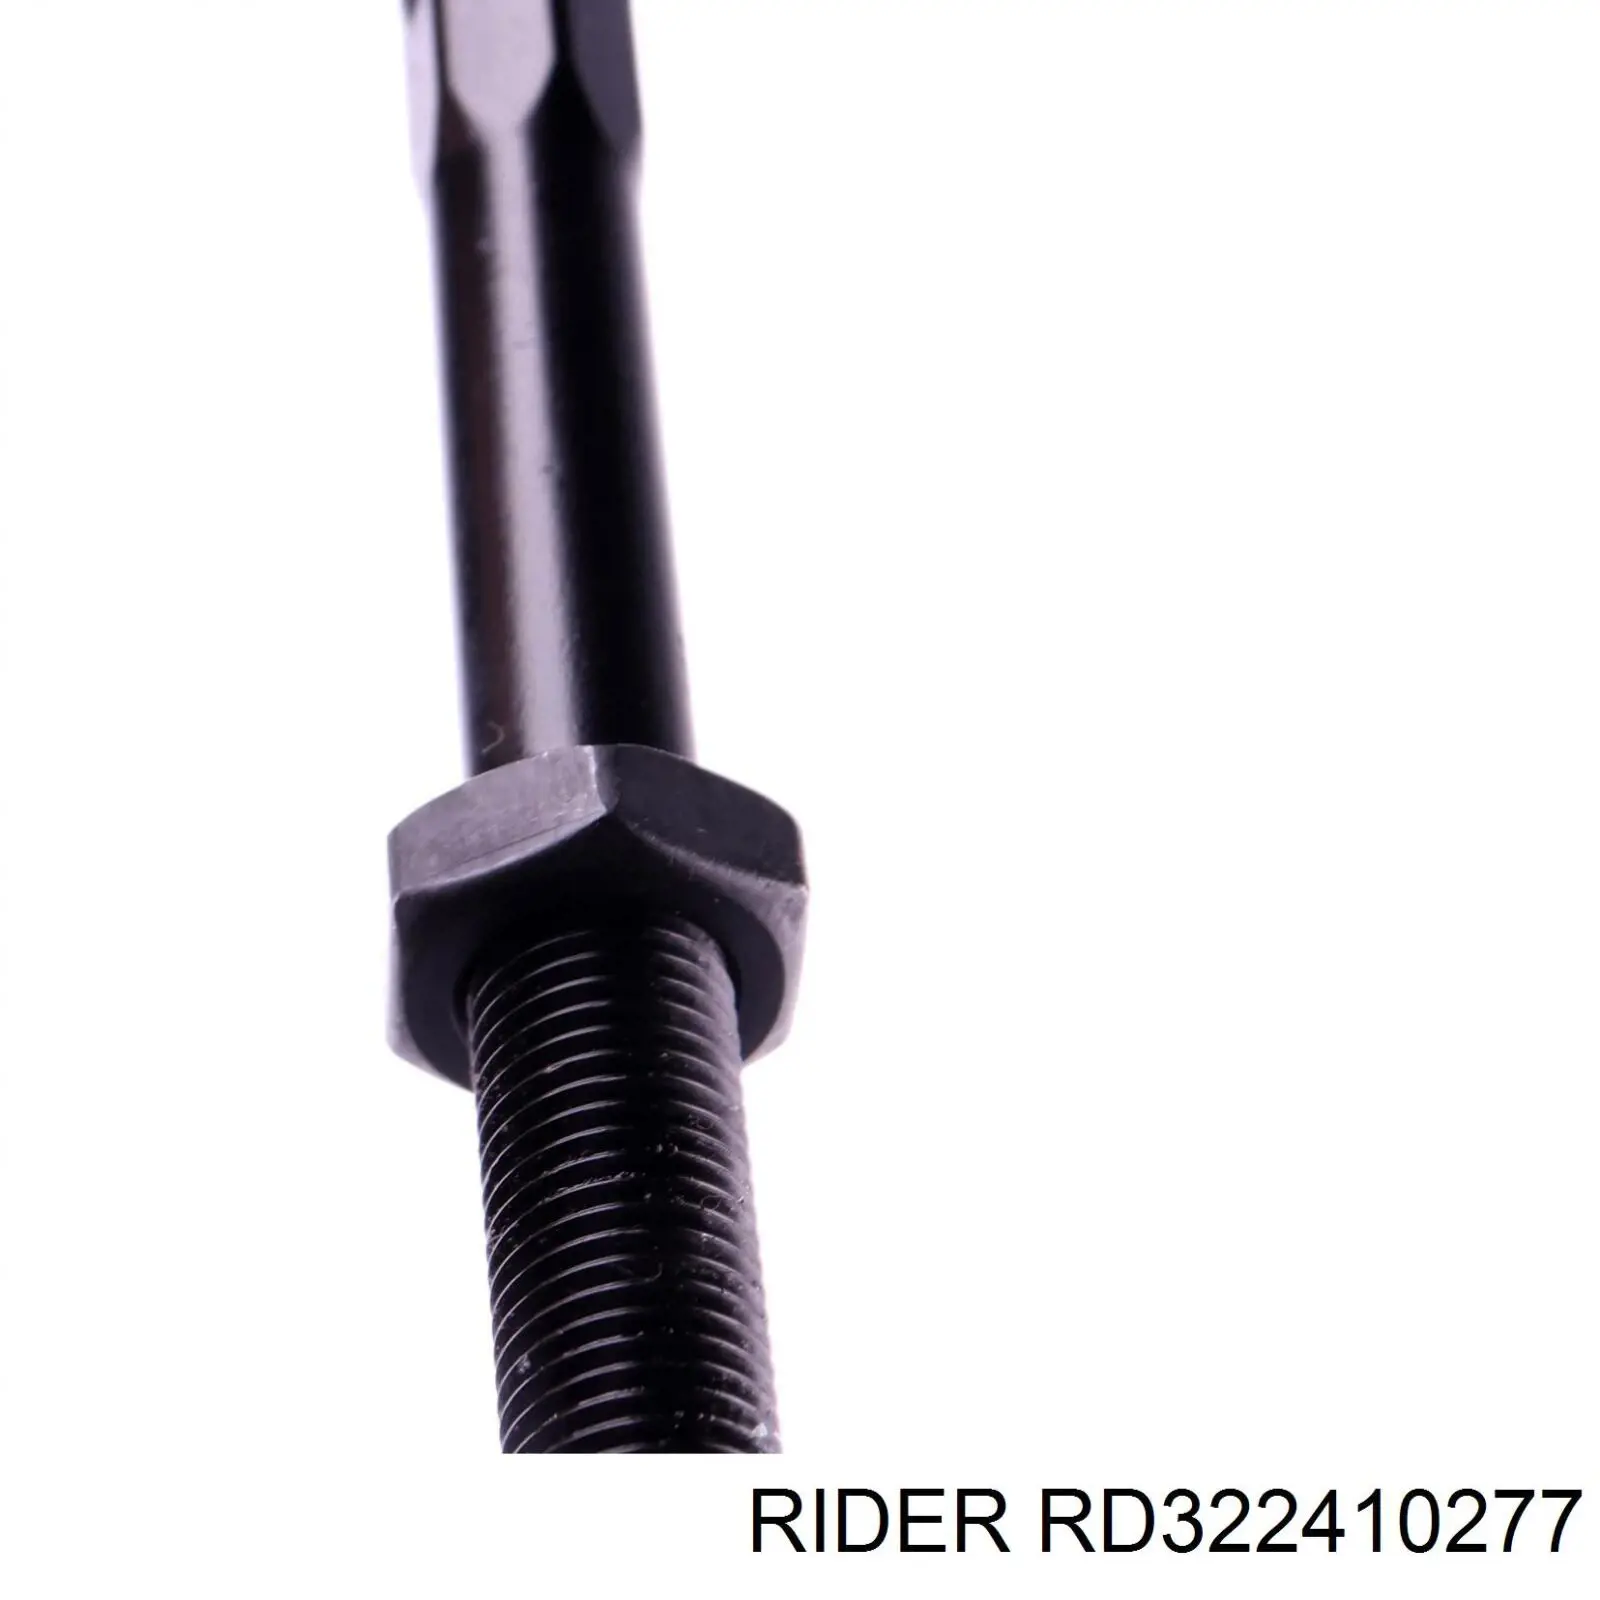 RD322410277 Rider barra de acoplamiento